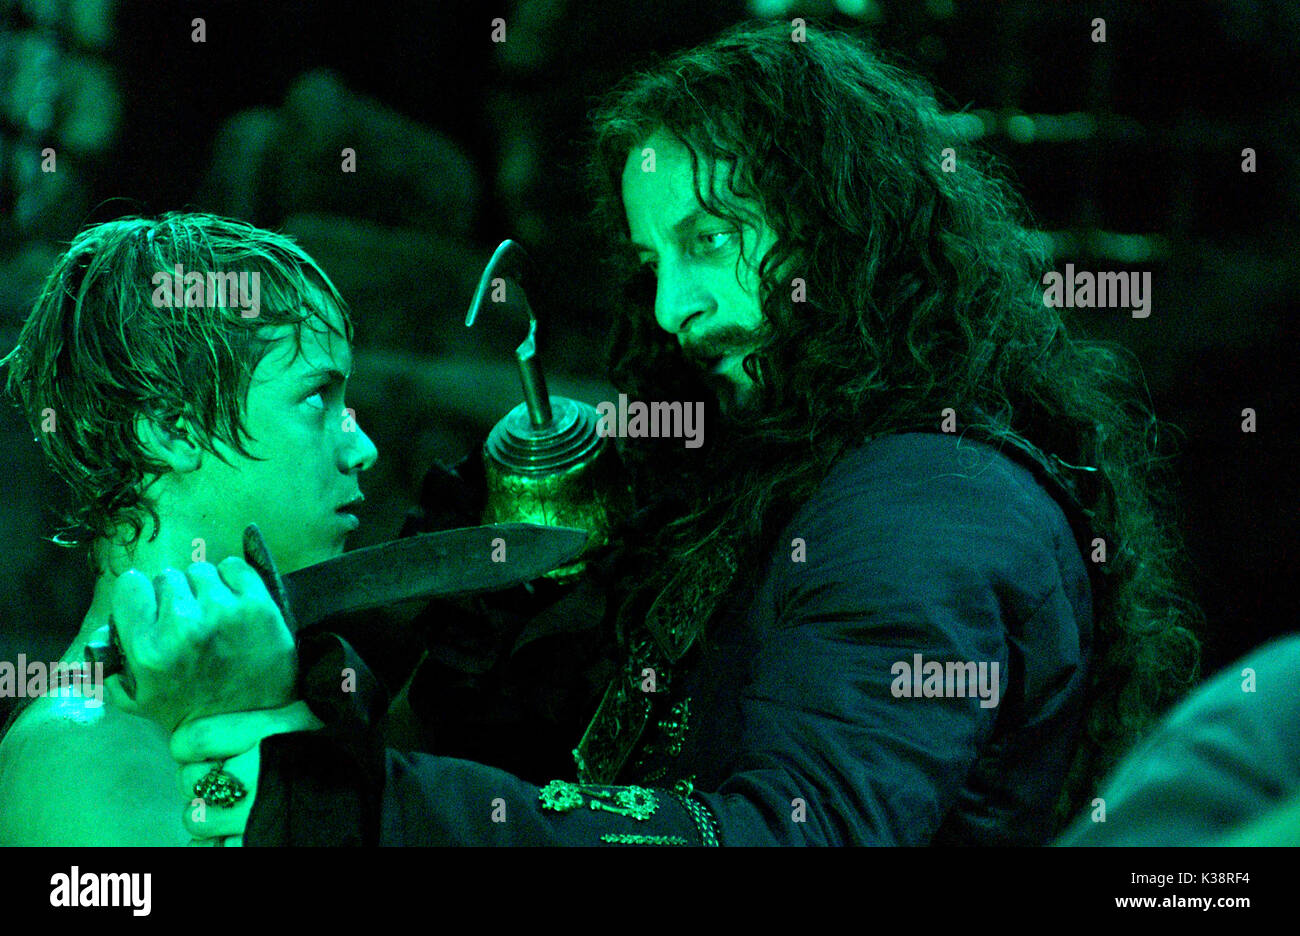 PETER PAN JEREMY SUMPTER as Peter Pan, JASON ISAACS as Captain Hook     Date: 2003 Stock Photo